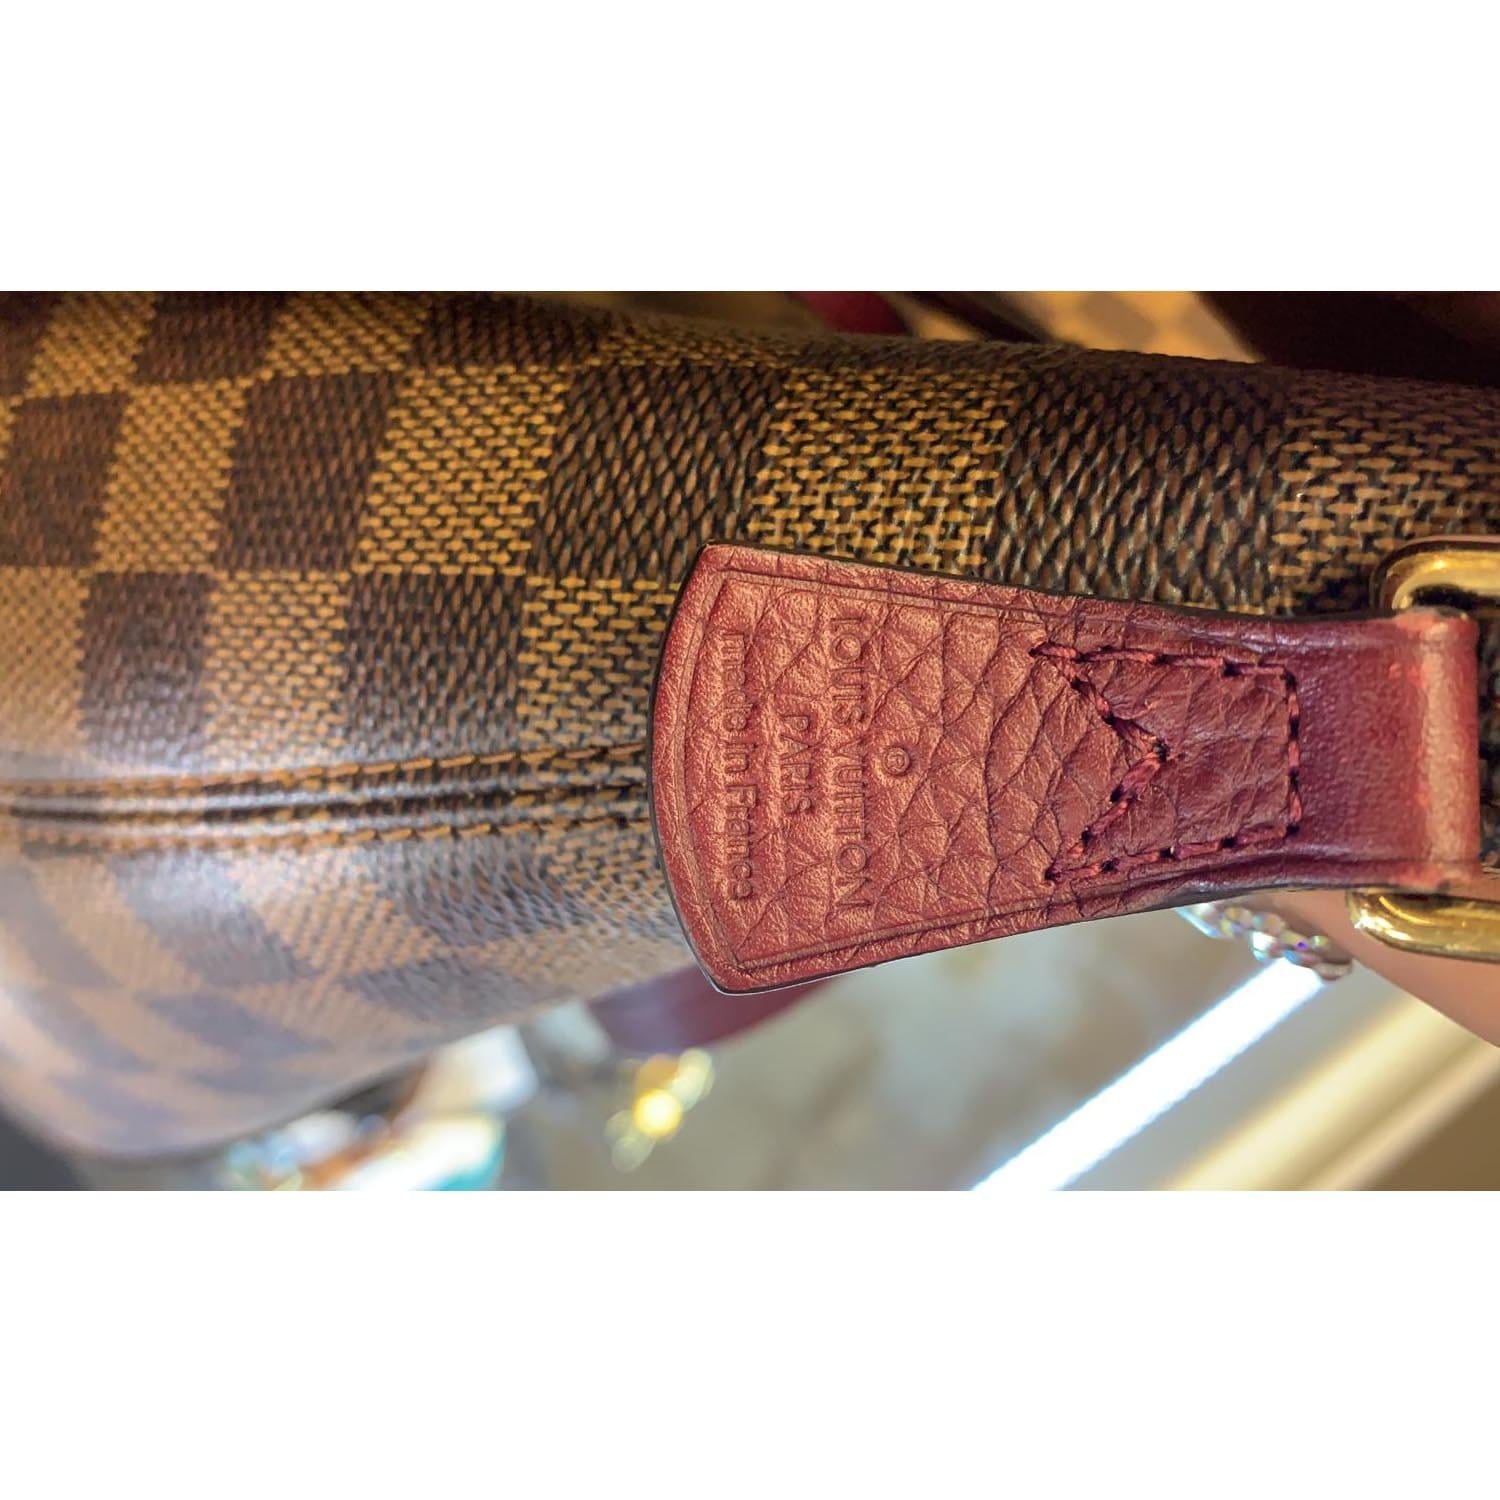 Louis Vuitton Hyde Park Damier Ebene Shoulder Bag in Mint Condition